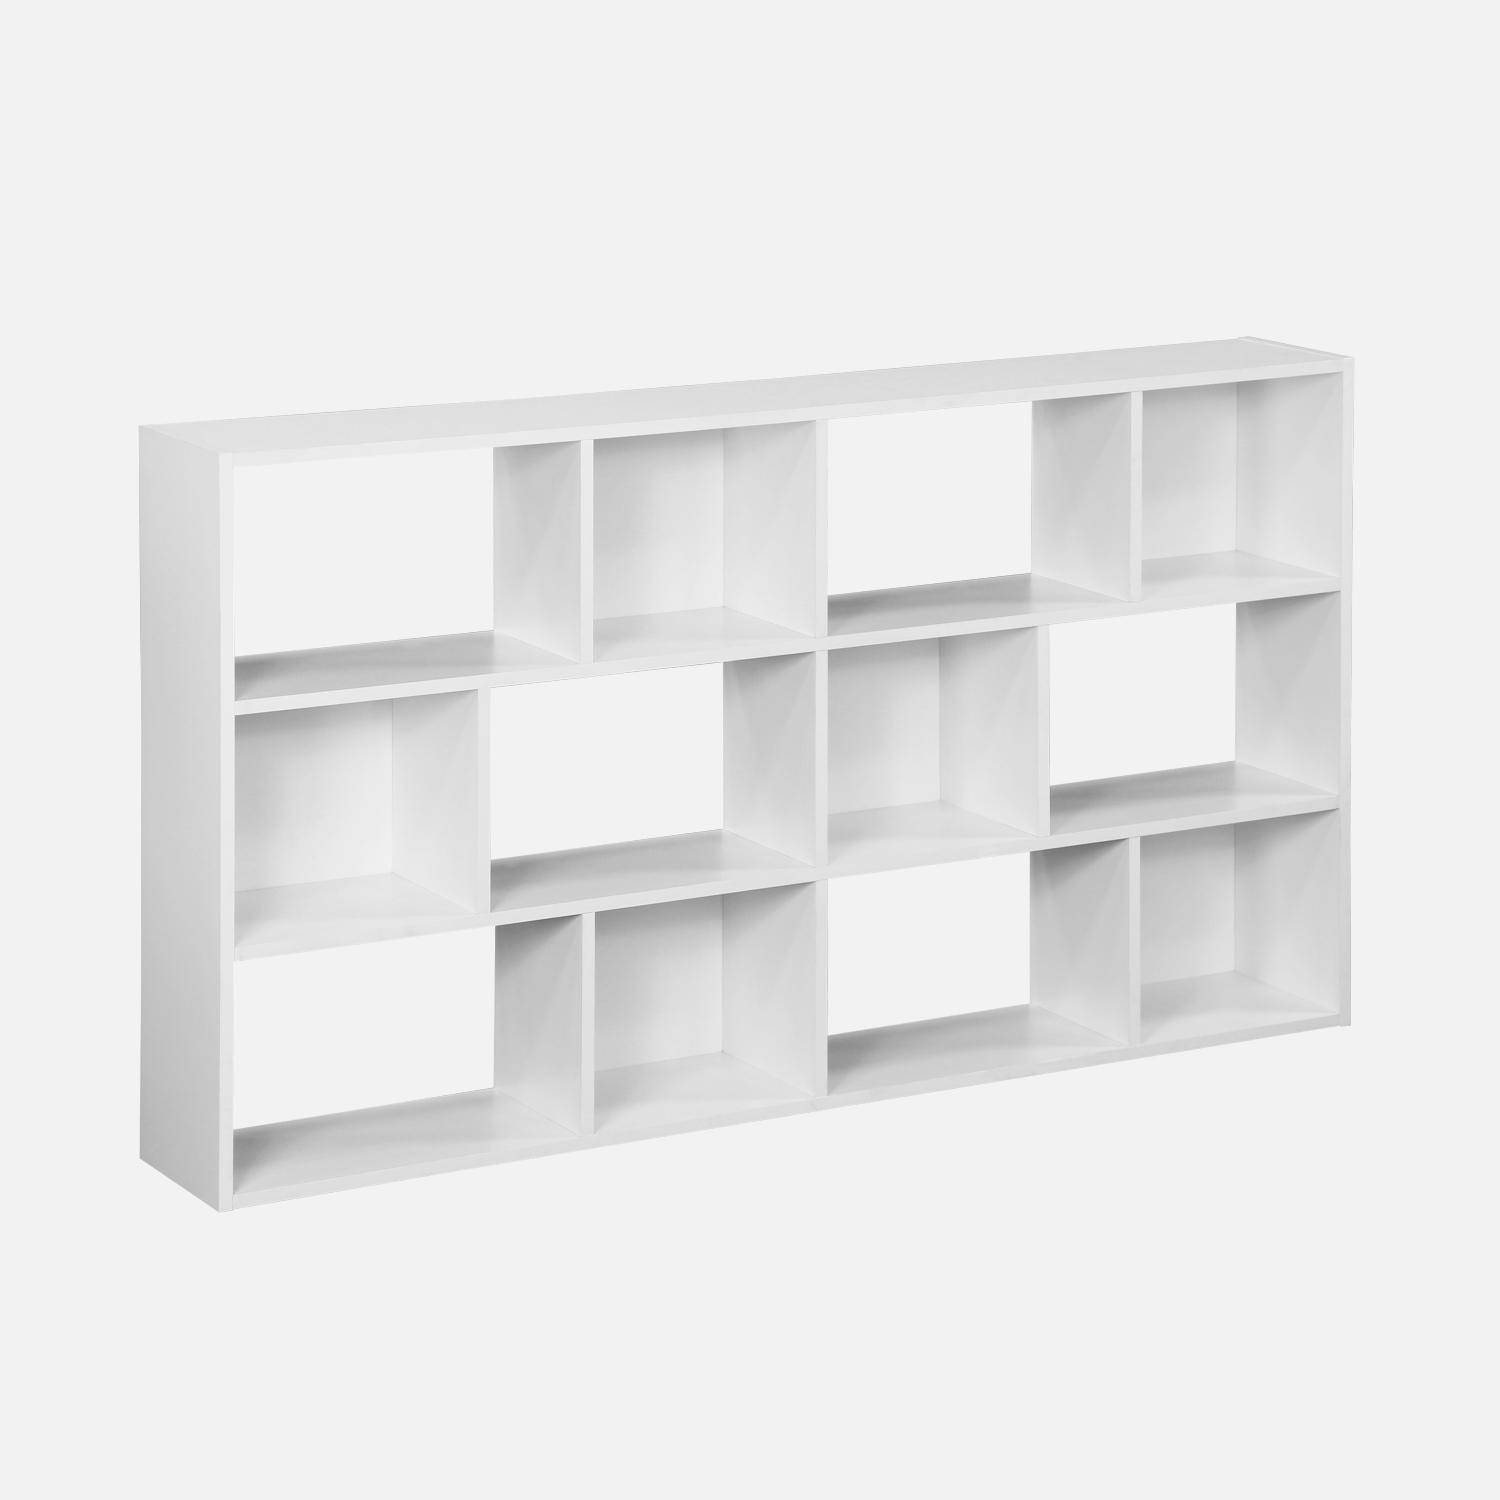 Bibliothèque design asymétrique blanche, Pieter, 3 étagères, 12 compartiments de rangement Photo5